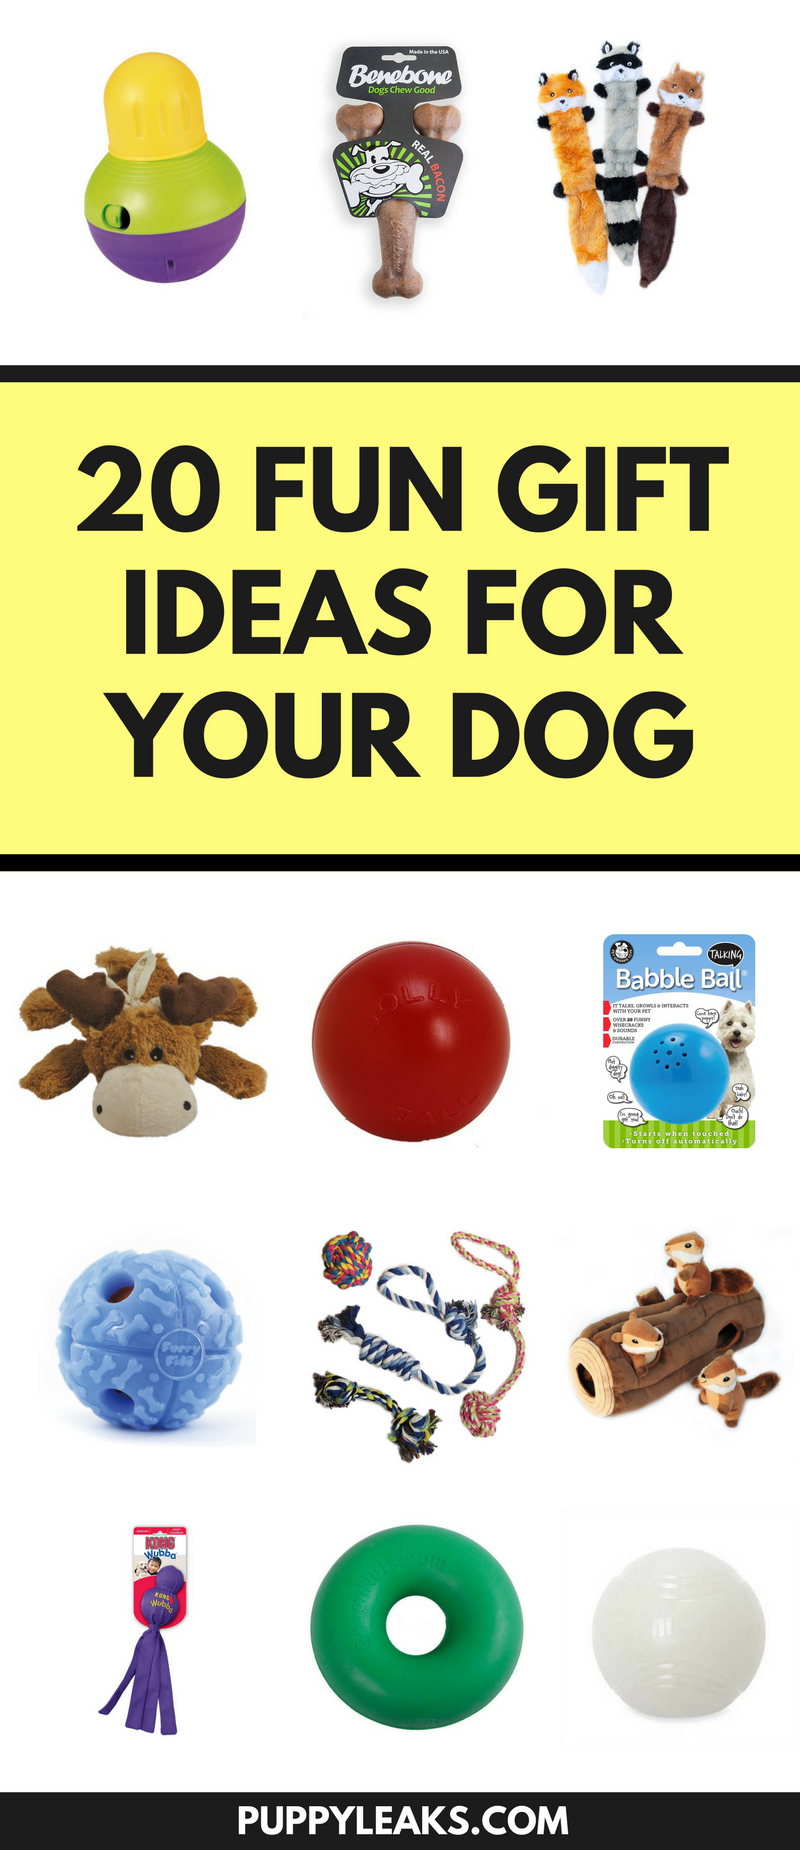 개를 위한 20가지 재미있는 크리스마스 선물 아이디어